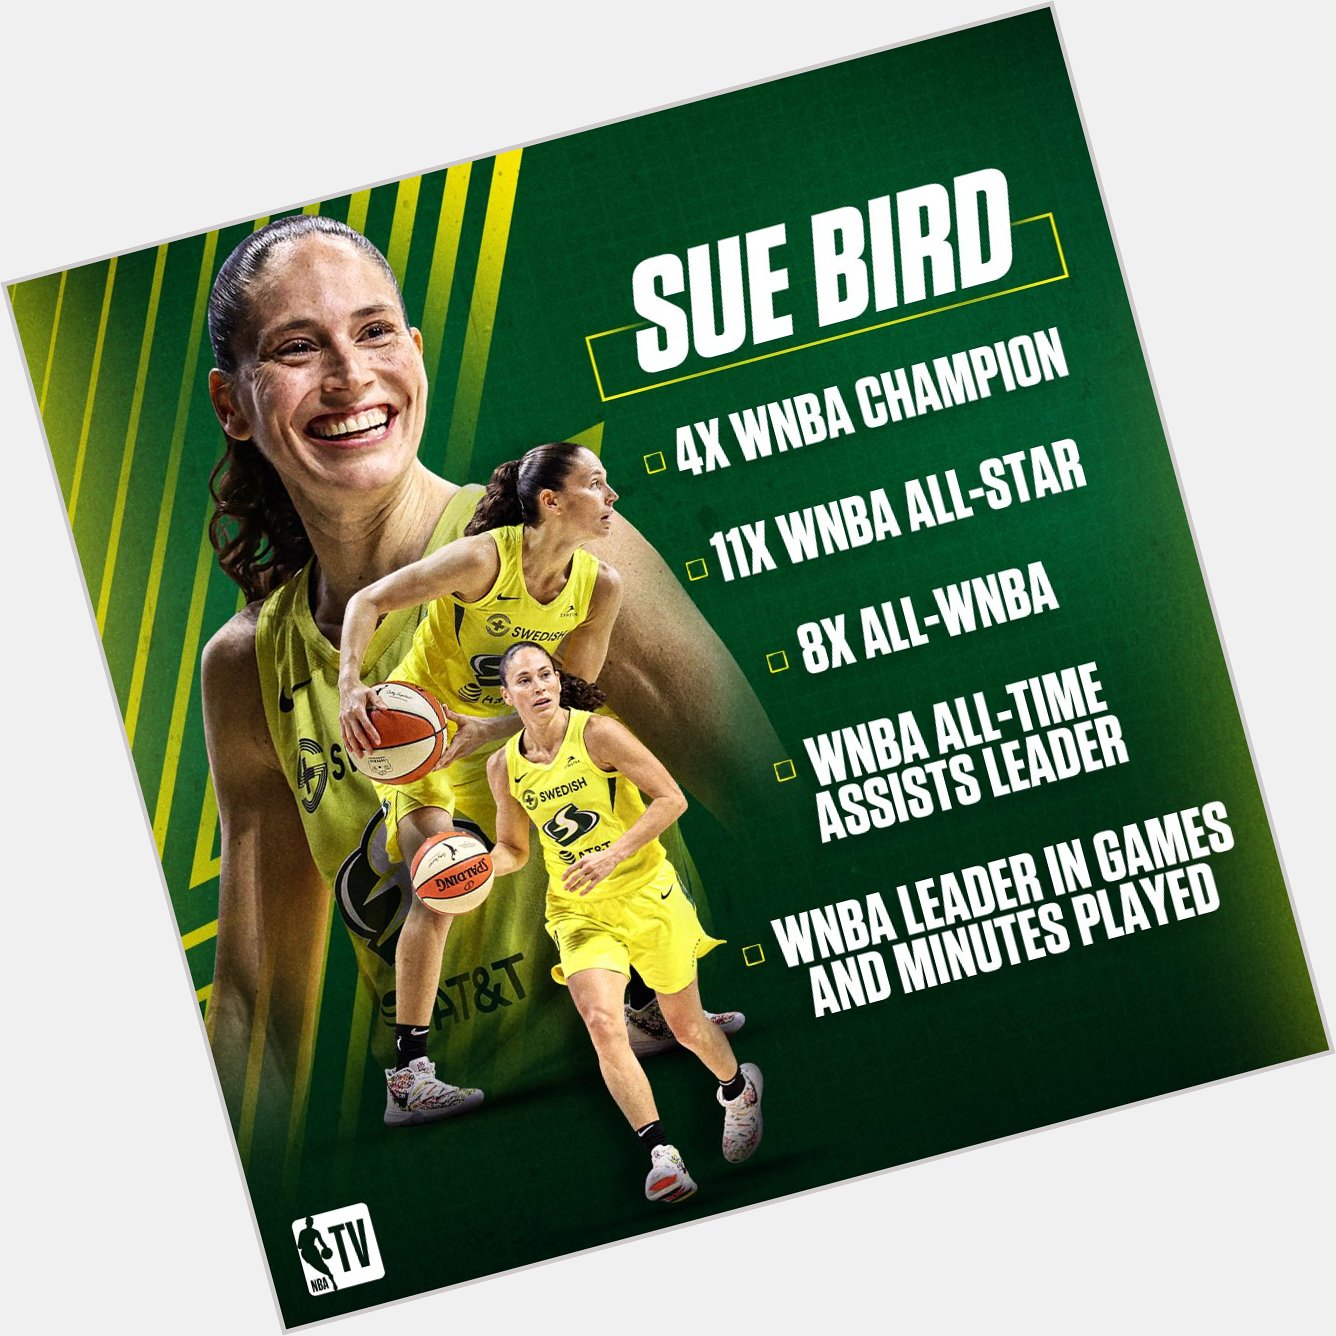 Sue Bird s career has been legendary! Happy birthday, 